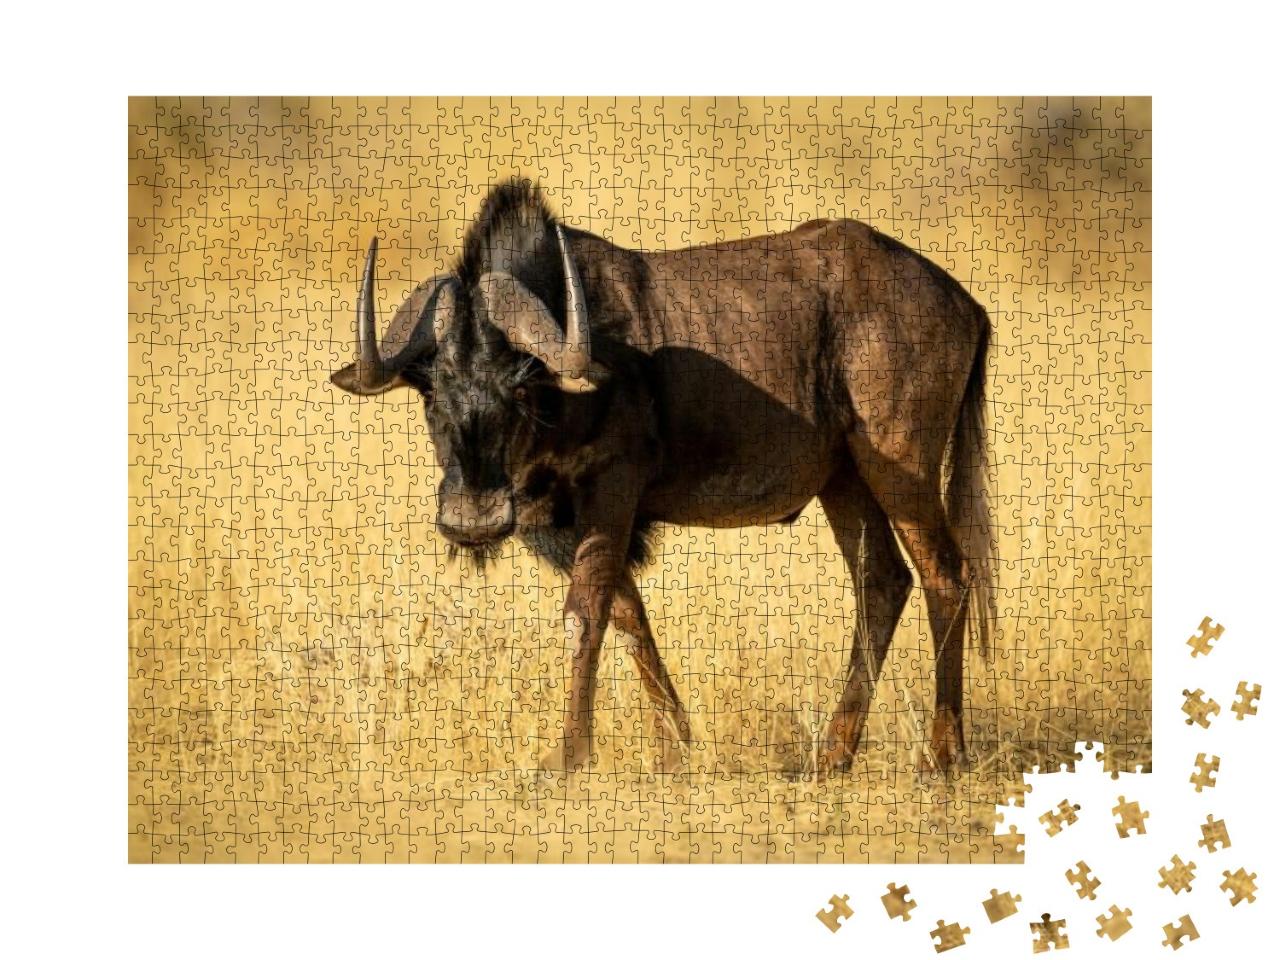 Black Wildebeest Walks Through Grass in Sunshine... Jigsaw Puzzle with 1000 pieces